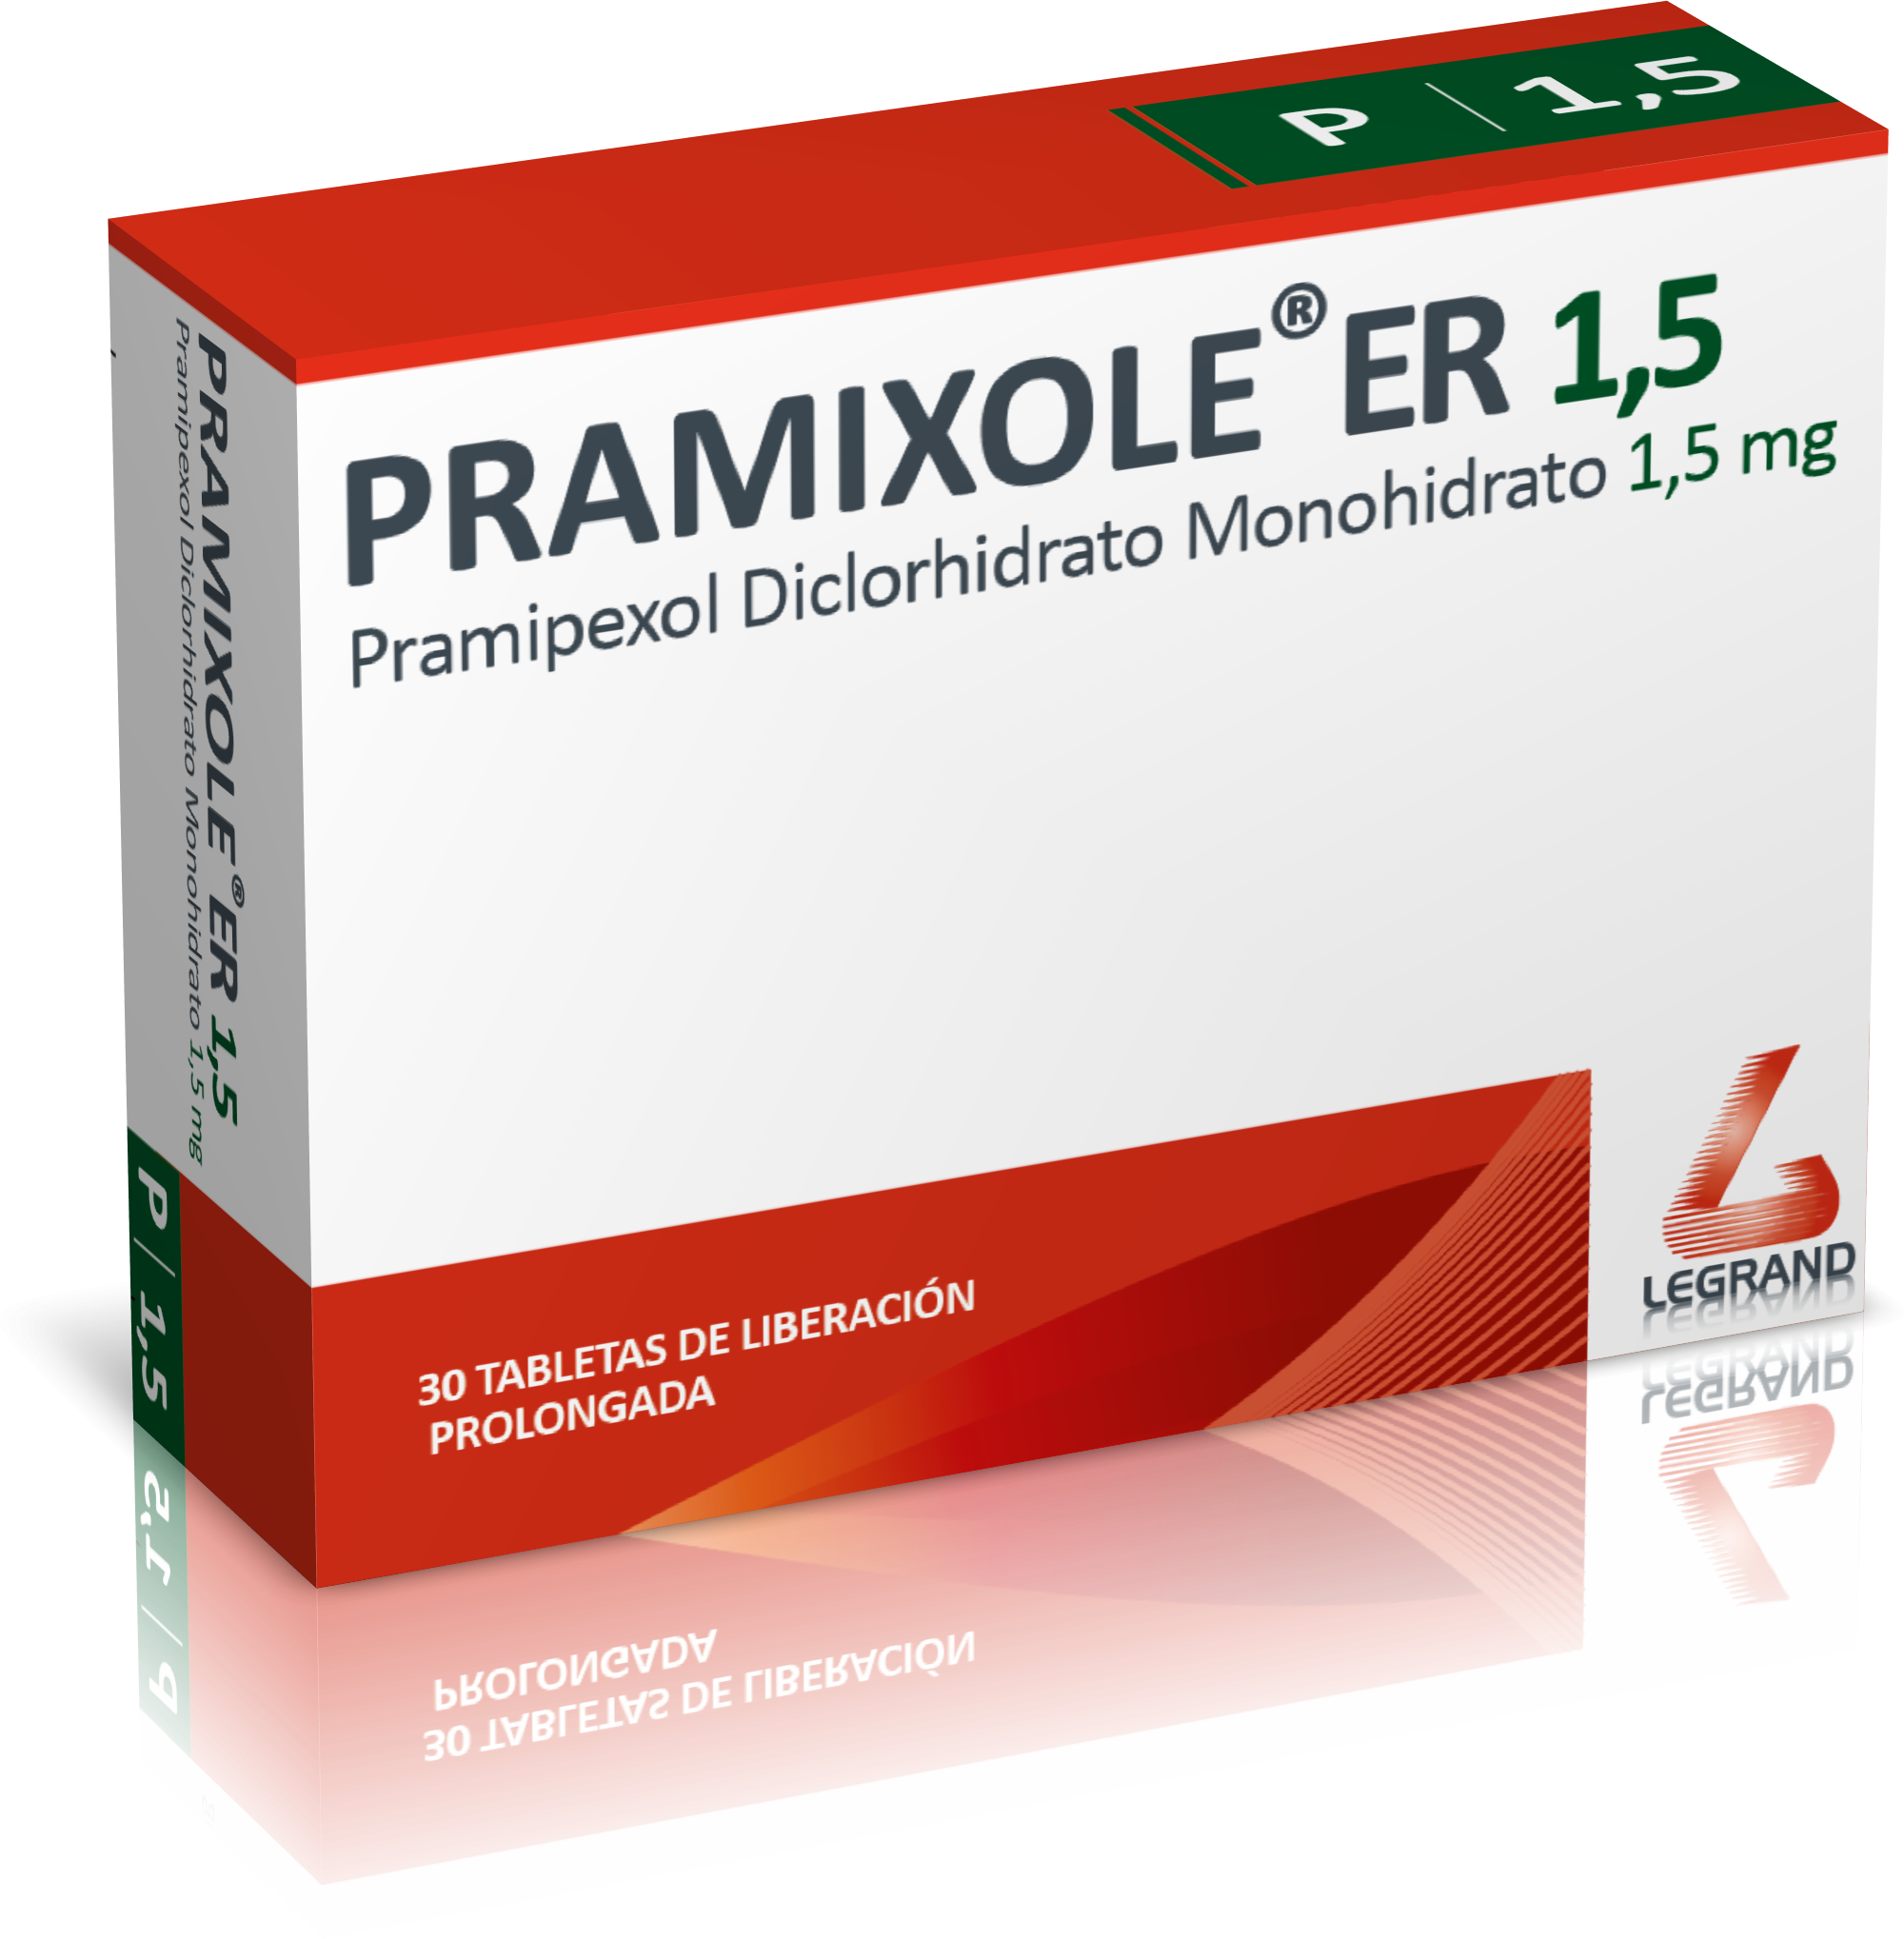 PRAMIXOLE® ER 1,5 mg TABLETAS DE LIBERACIÓN PROLONGADA